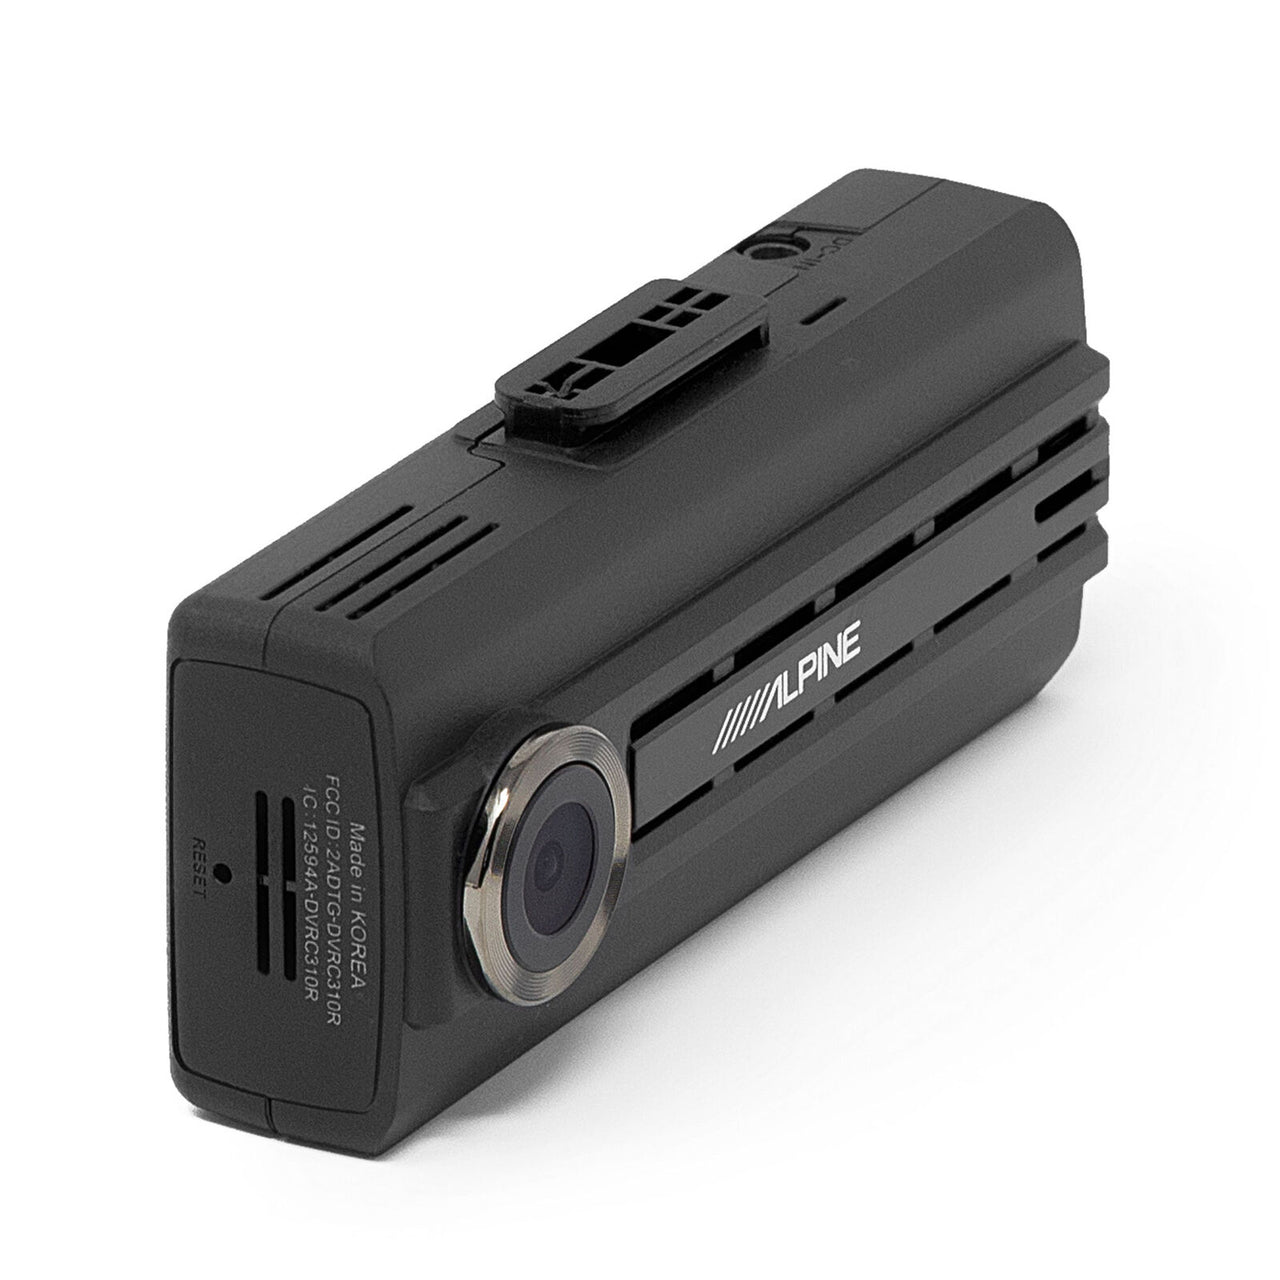 Alpine DVR-C310R Wi-Fi-Enabled Dashboard Dash Cam HD Video Recording + Rear Camera